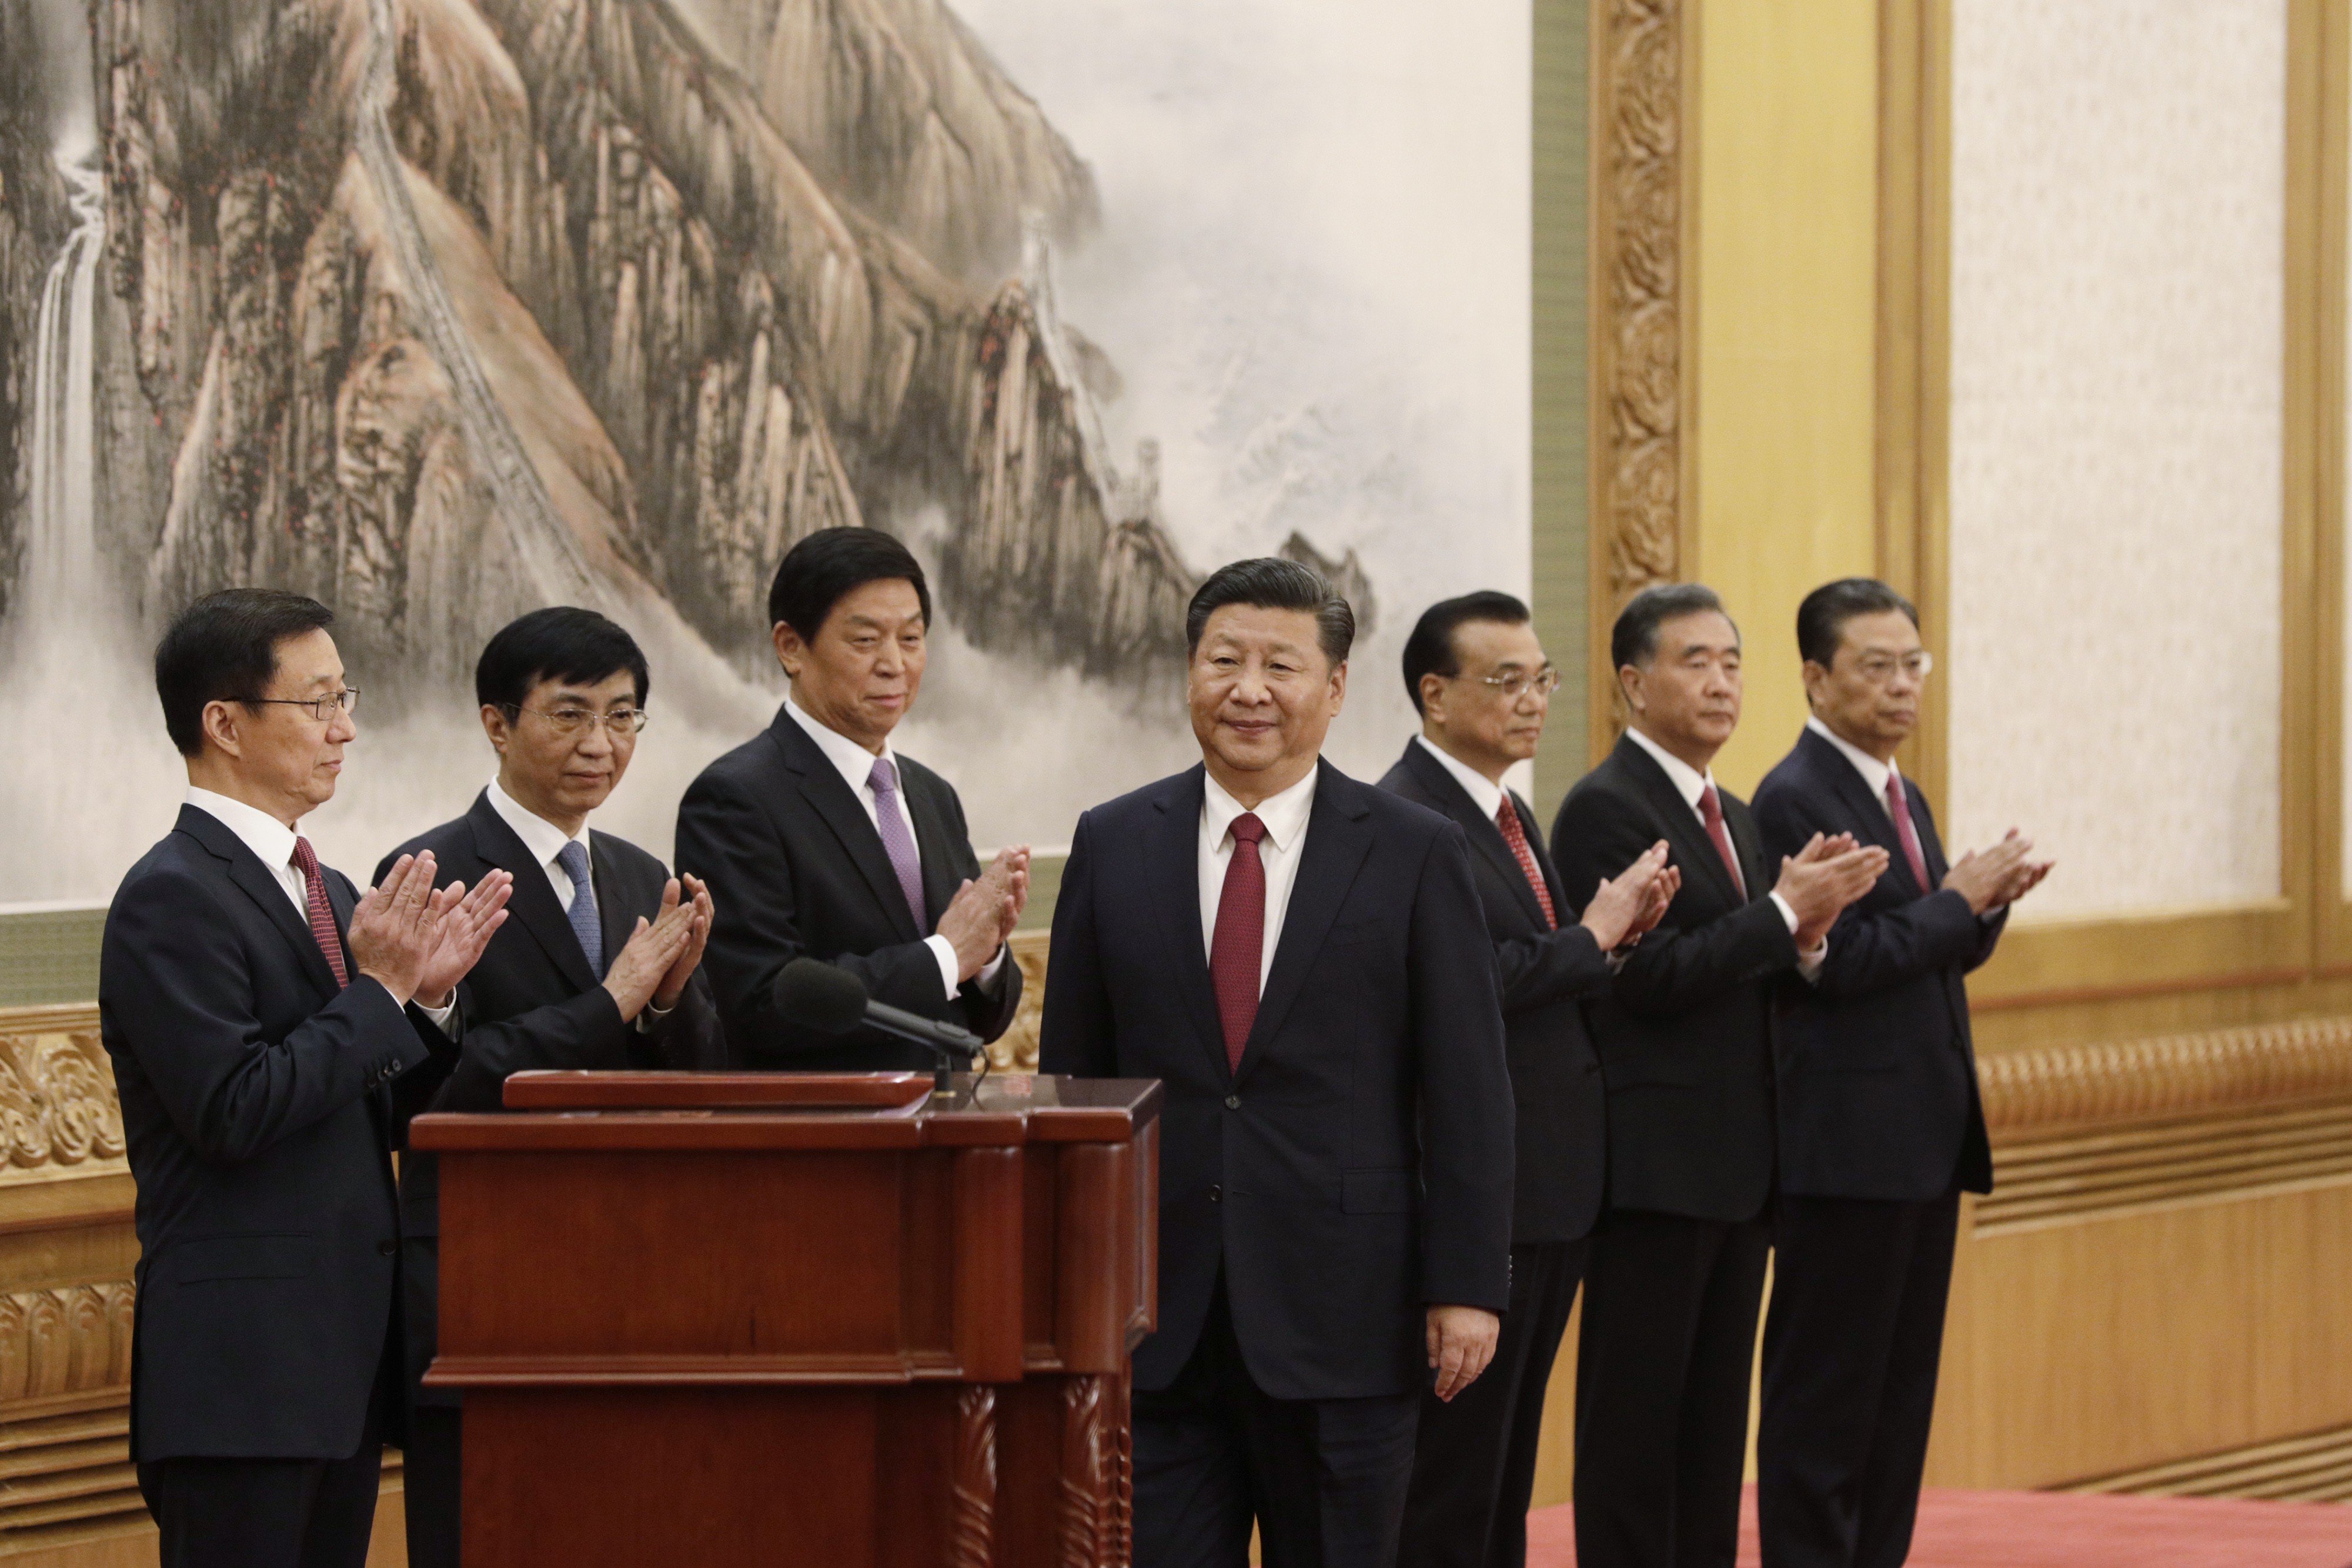 President Xi Jinping (centre) and his all-men Politburo Standing Committee (from left): Han Zheng, Wang Huning, Li Zhanshu, Li Keqiang, Wang Yang and Zhao Leji. Photo: Bloomberg